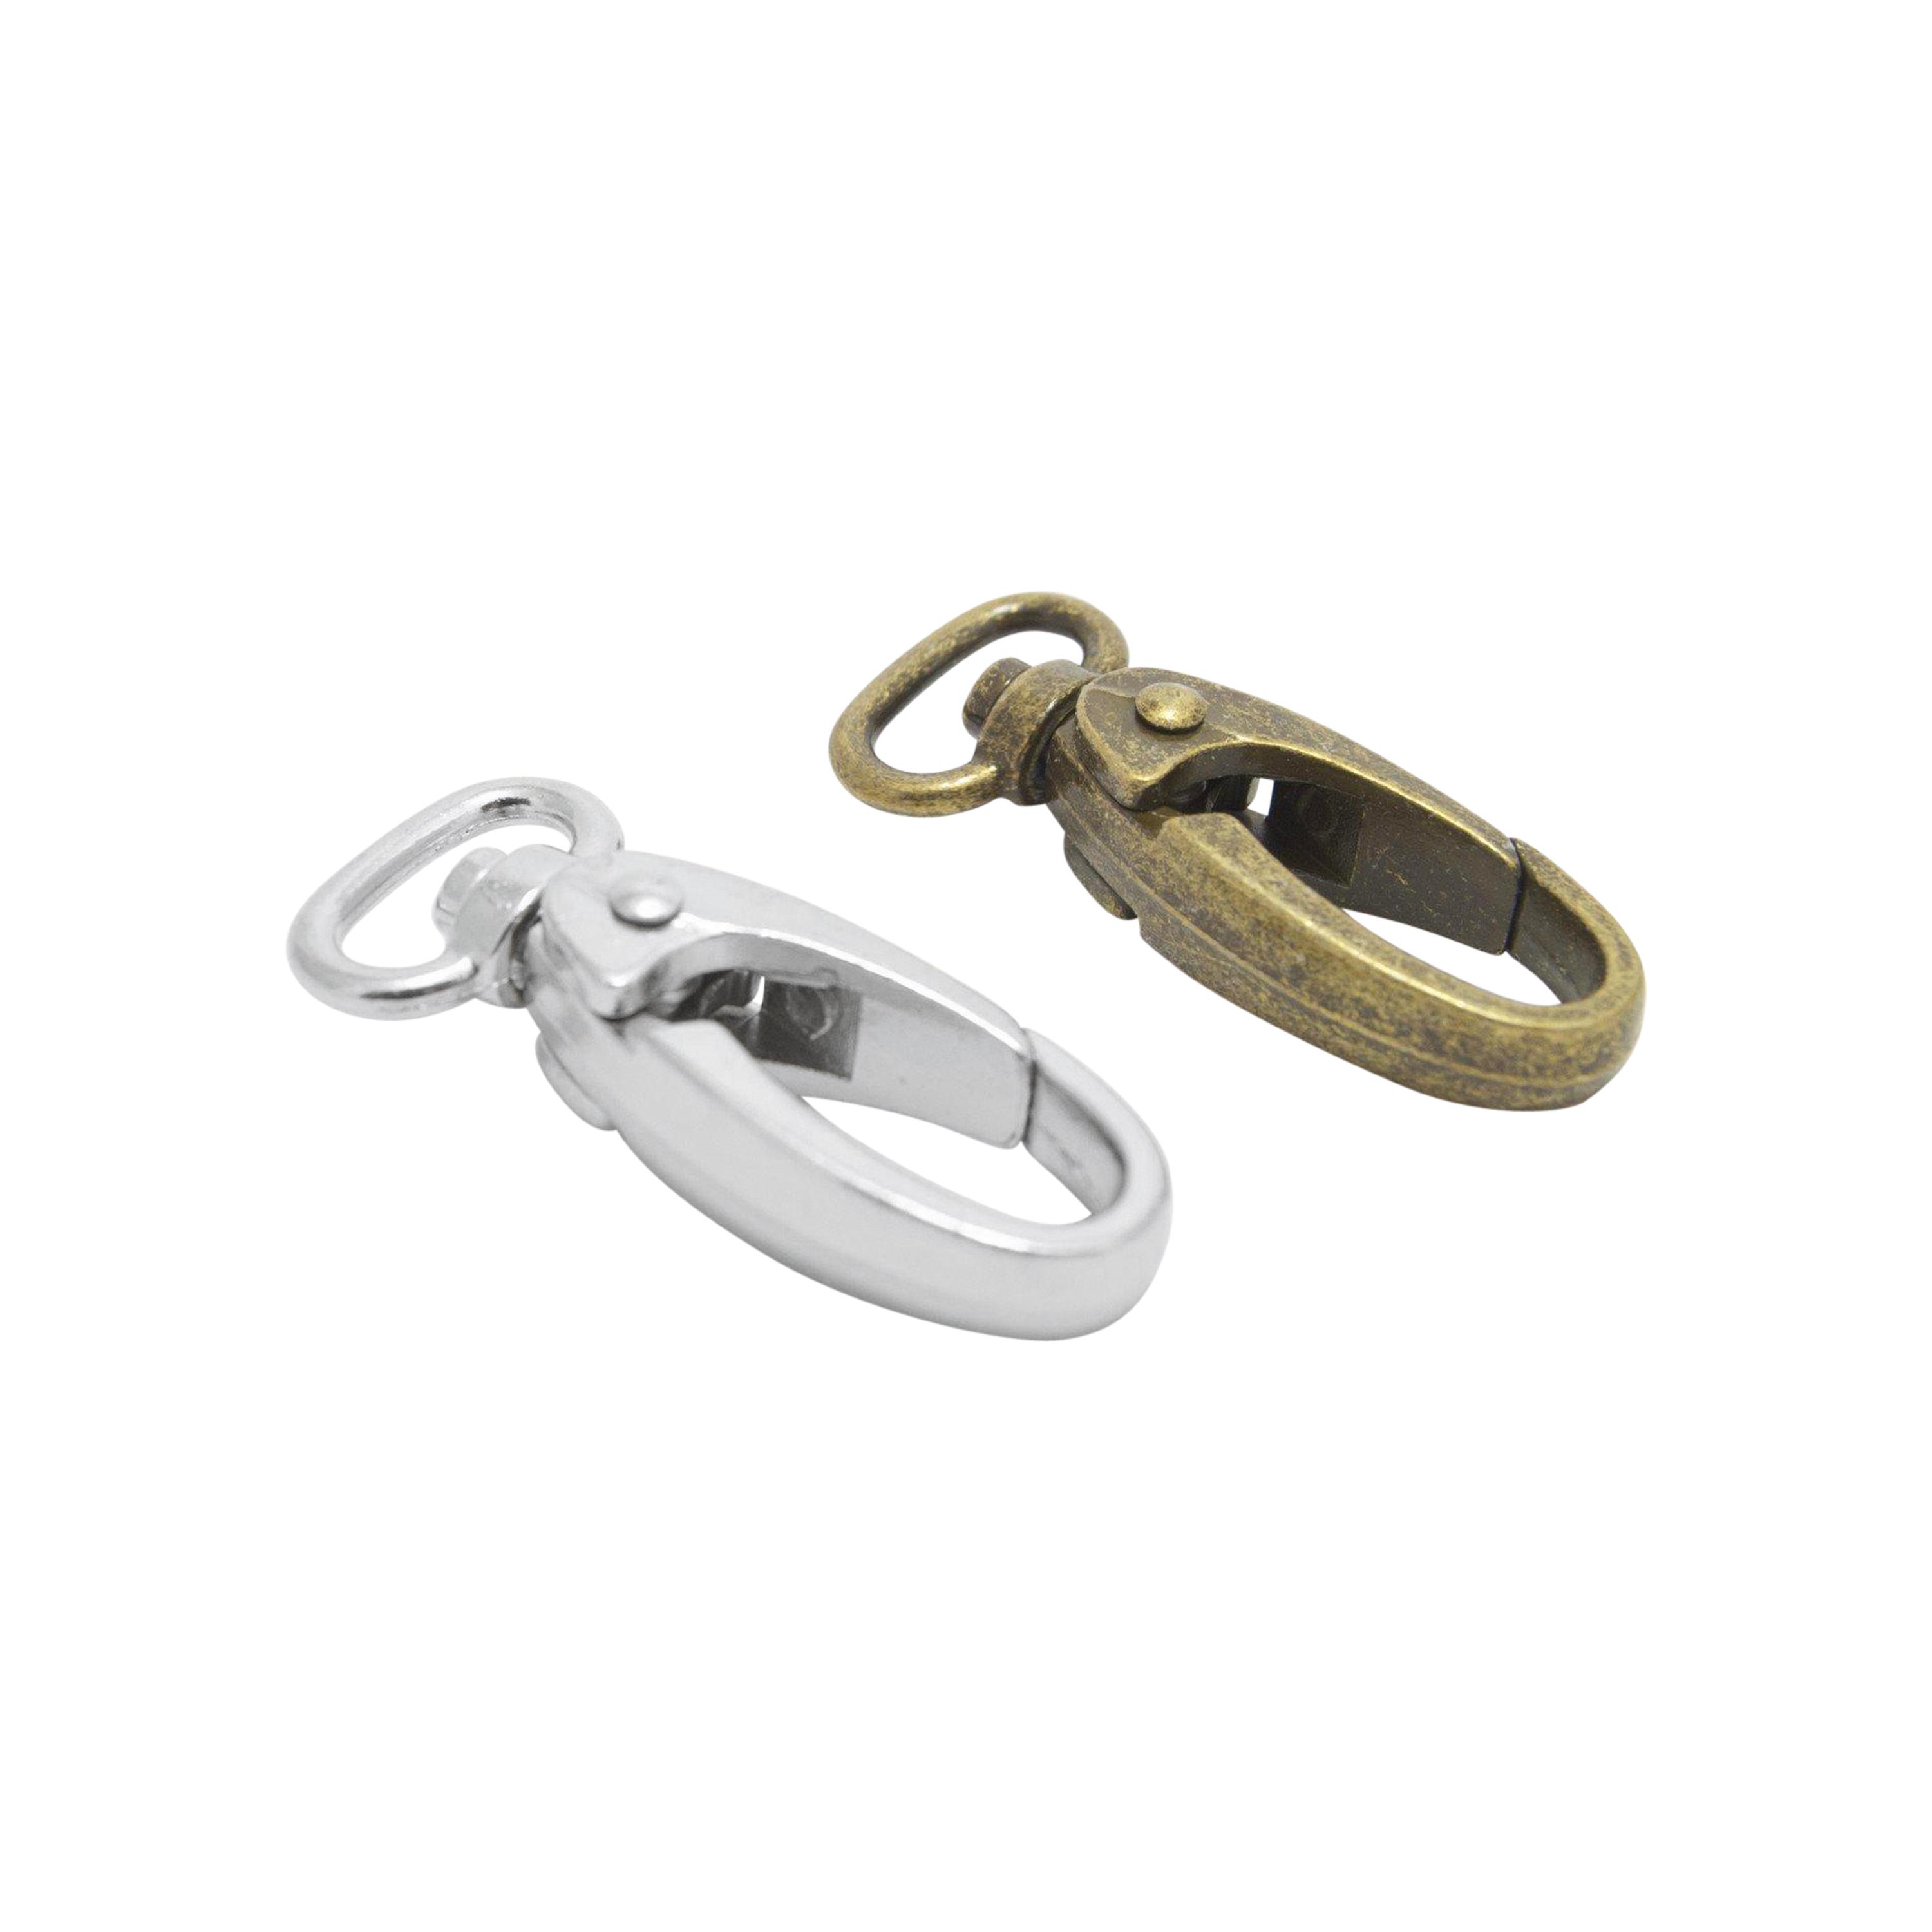 1/2" swivel snap hooks in silver or antique brass